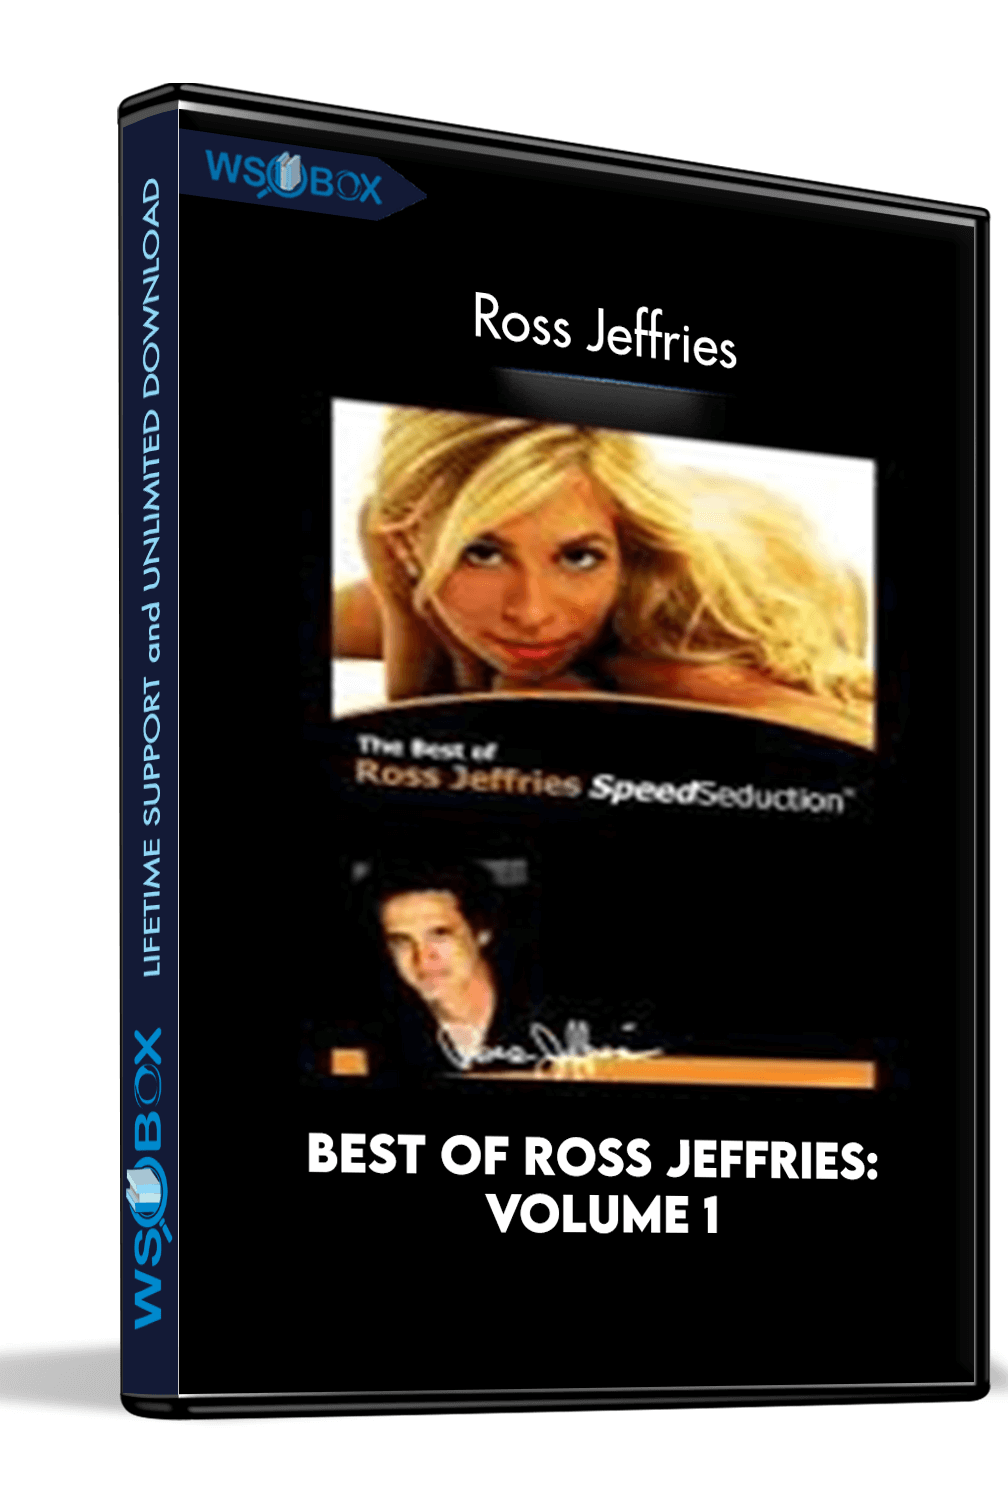 Best of Ross Jeffries: Volume 1 – Ross Jeffries